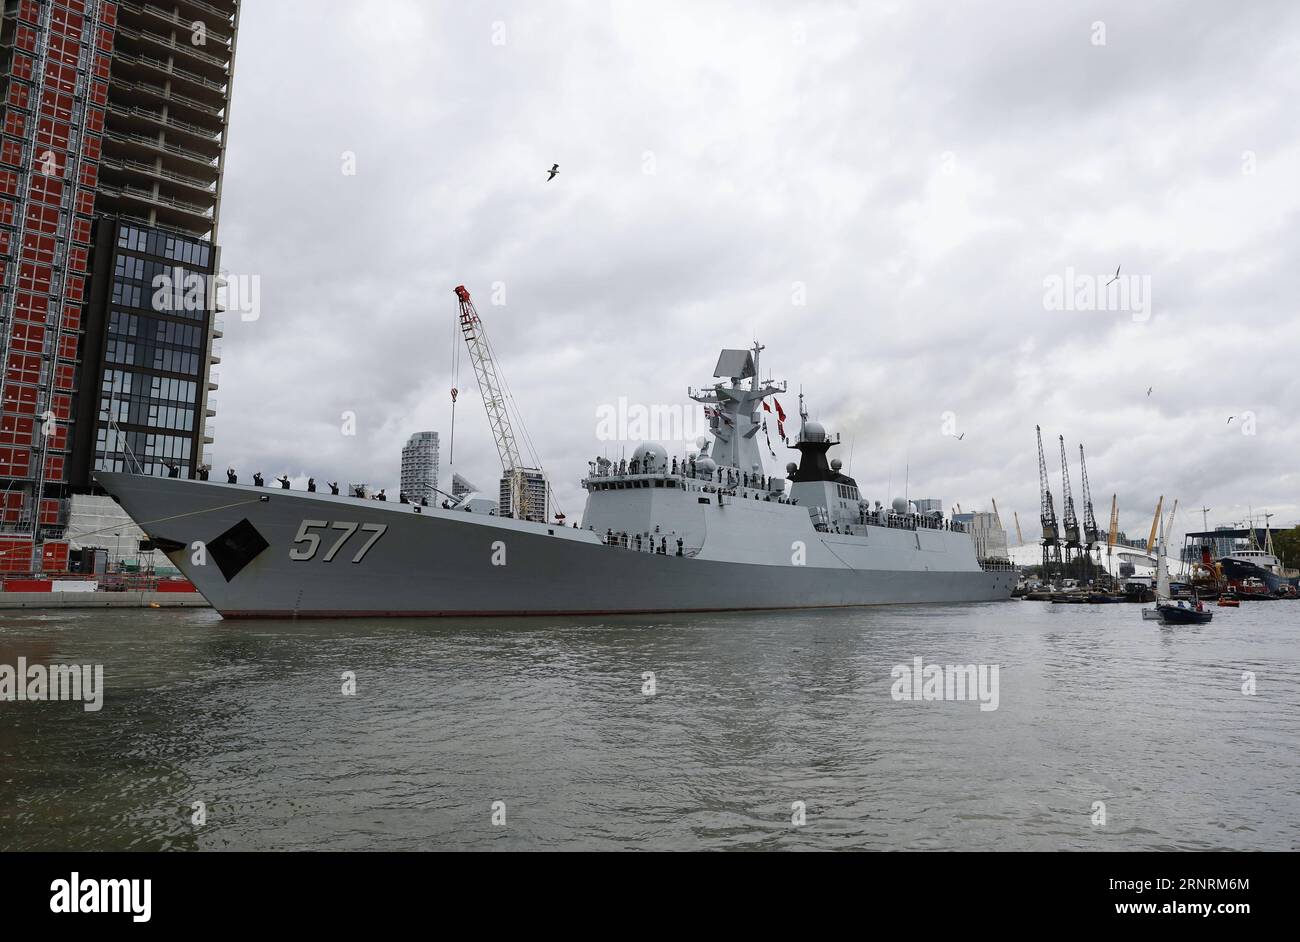 (171007) -- LONDRA, 7 ottobre 2017 -- la fregata a missili guidati Huanggang della 26a flotta di scorta navale cinese parte dai West India Docks nella zona est di Londra a Canary Wharf, Gran Bretagna, il 7 ottobre 2017. La 26a flotta di scorta navale della Cina è partita da qui sabato dopo una visita amichevole di cinque giorni in Gran Bretagna. La flotta, composta dalle fregate missilistiche guidate Huanggang e Yangzhou, e la nave di rifornimento completa Gaoyouhu, ha chiamato al Canary Wharf nella zona est di Londra martedì, la terza tappa del suo viaggio globale dopo aver completato la sua missione di scorta in agosto nel Golfo di Aden e nelle acque somale. ) BRITAIN-LOND Foto Stock